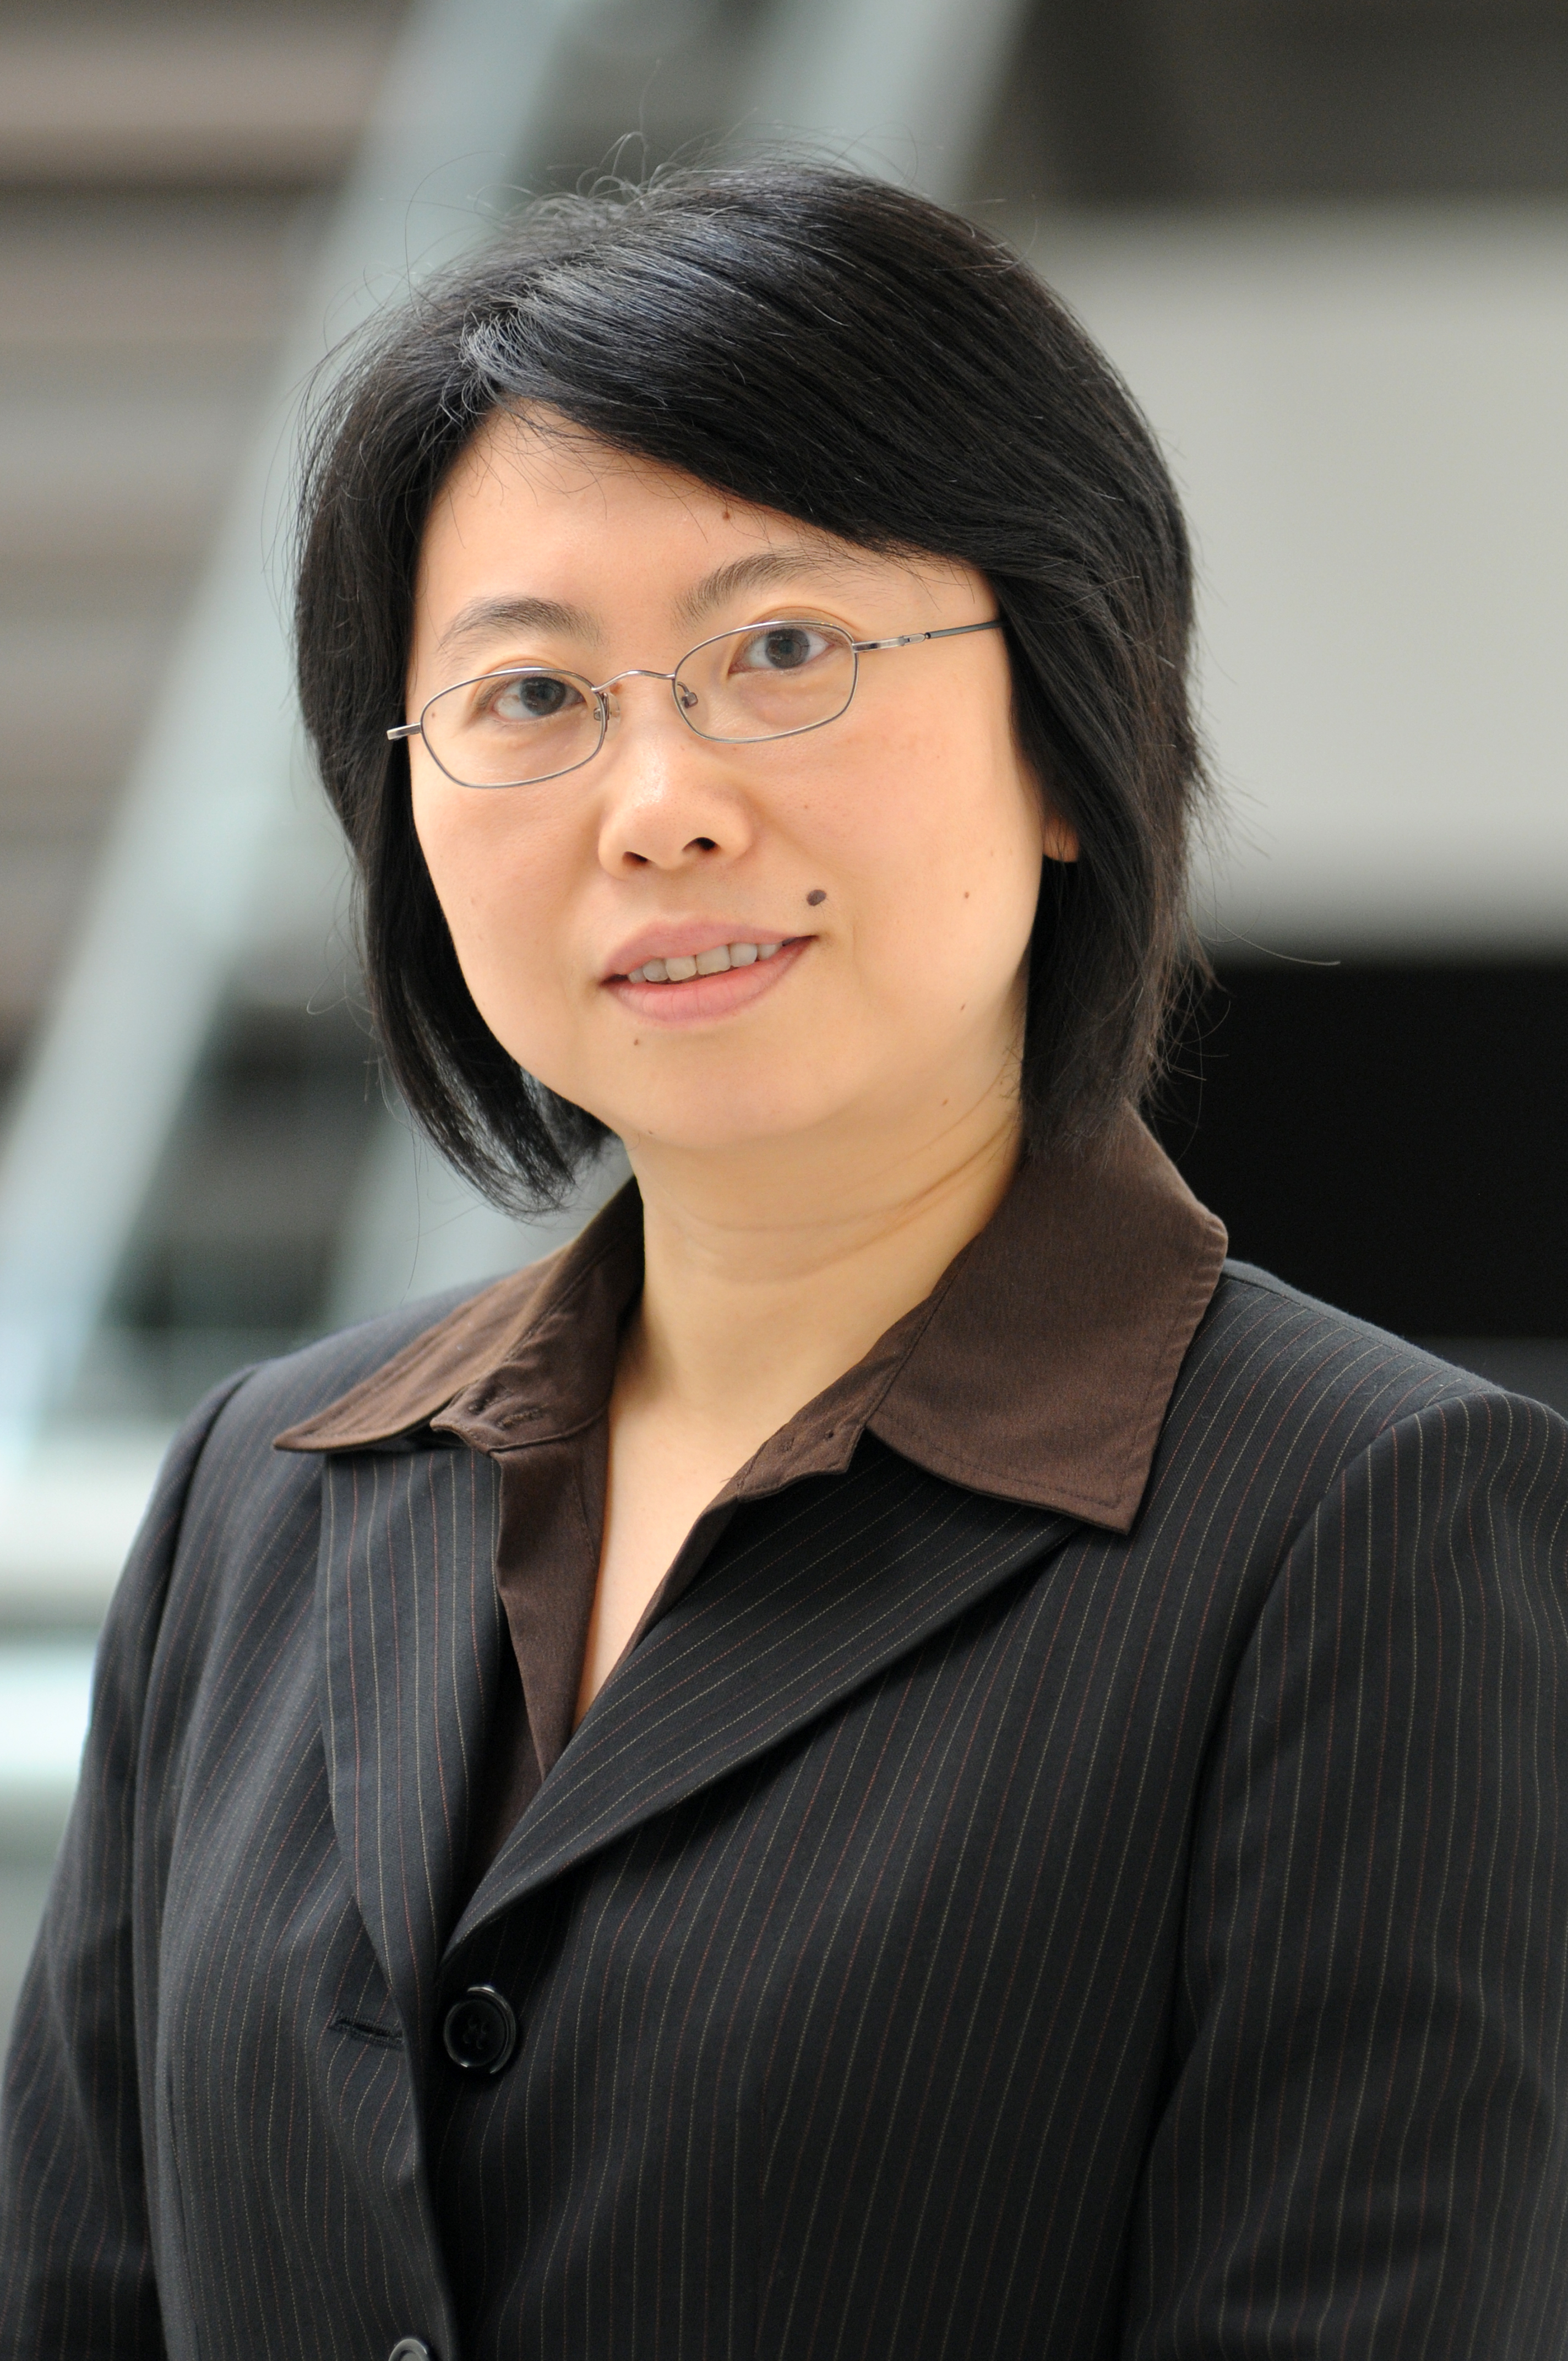 Dr. Yaping Yang